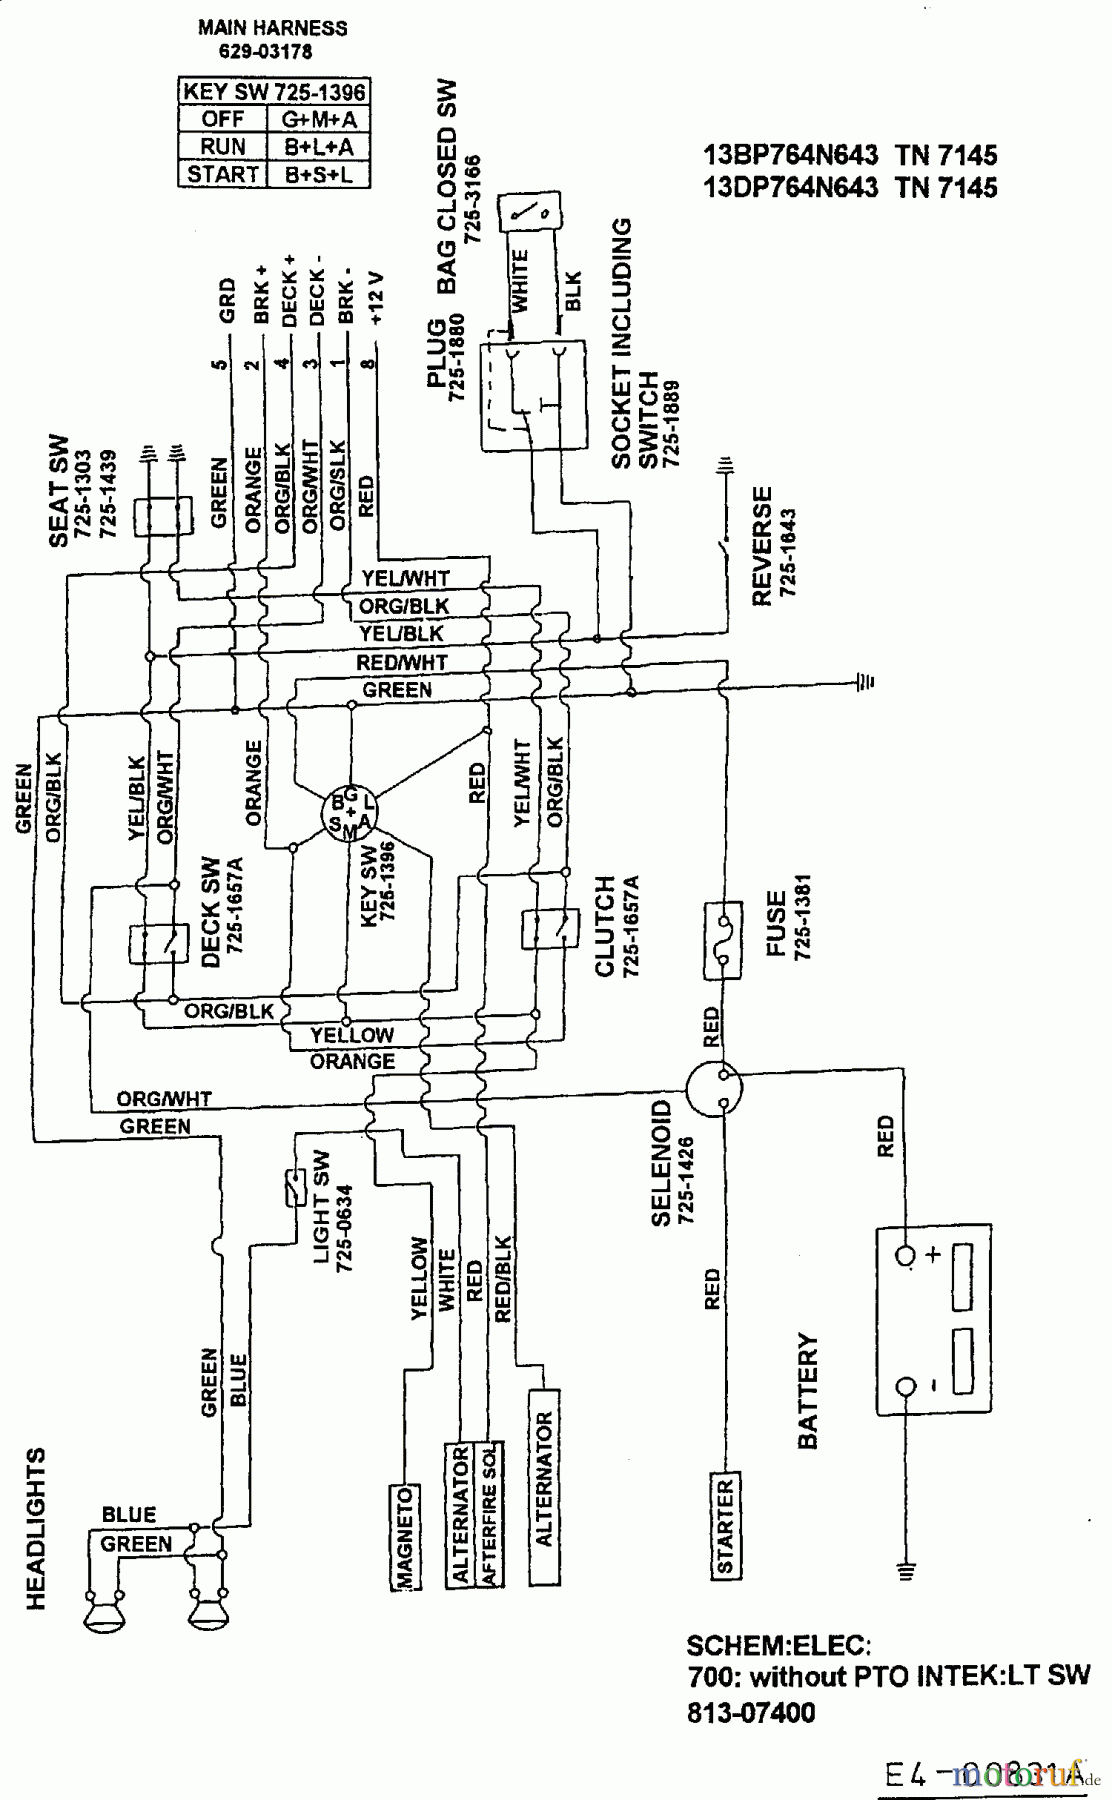  White Rasentraktoren ET 160 13CD766N679  (1999) Schaltplan